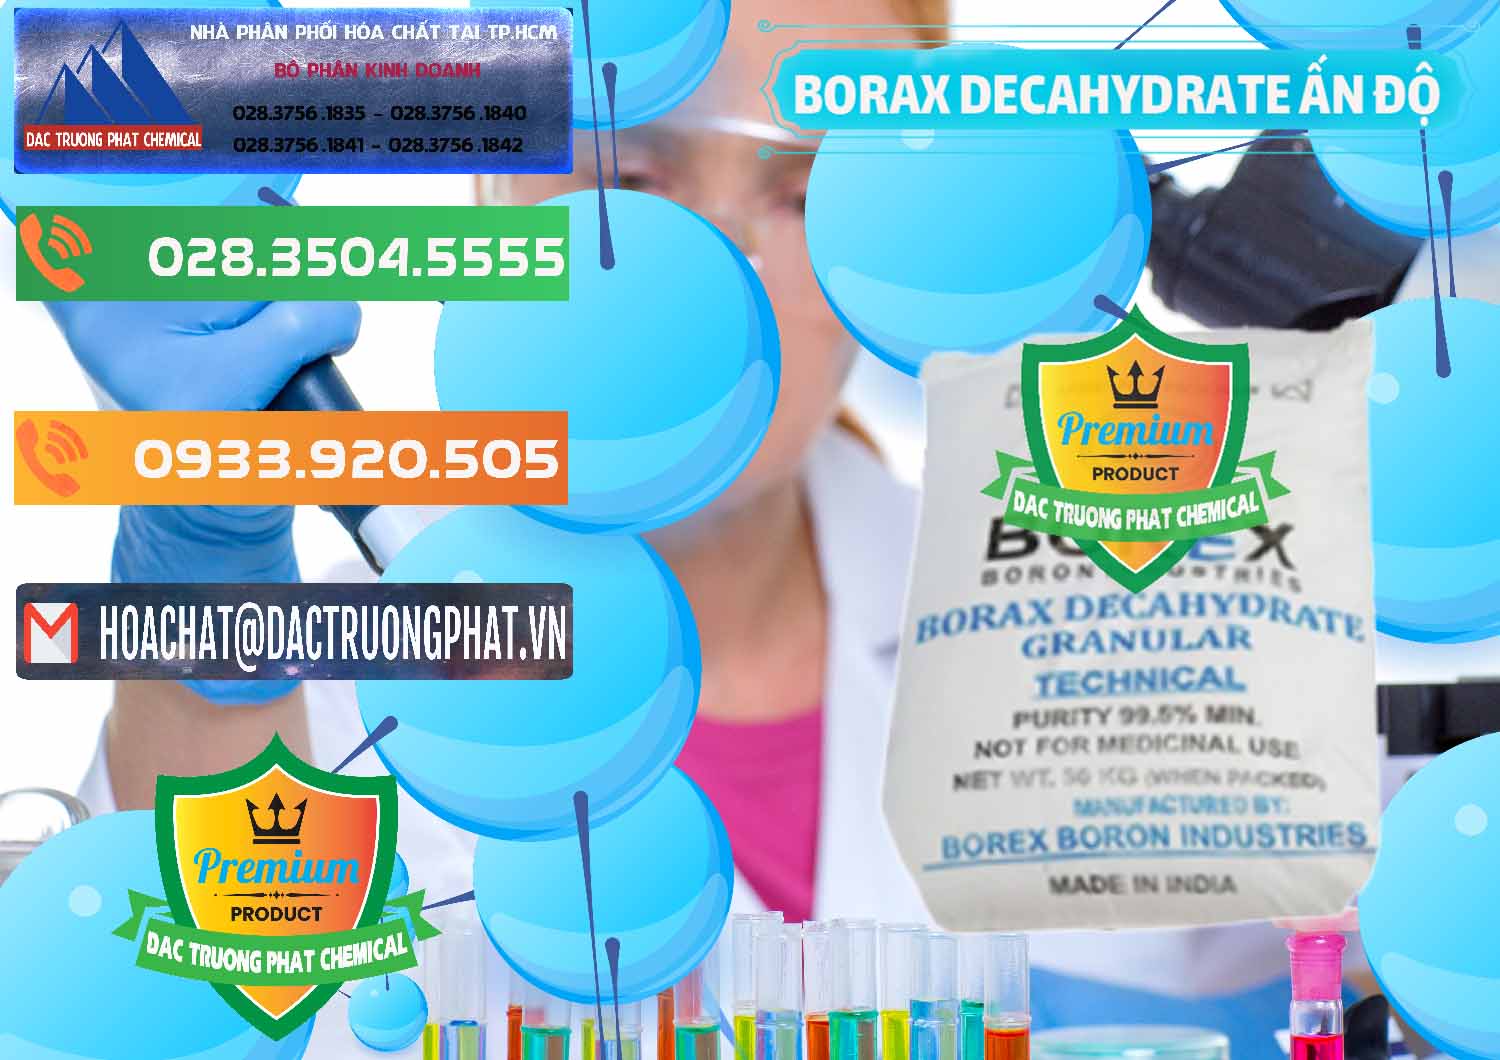 Công ty bán và phân phối Borax Decahydrate Ấn Độ India - 0449 - Công ty chuyên kinh doanh - phân phối hóa chất tại TP.HCM - hoachatxulynuoc.com.vn